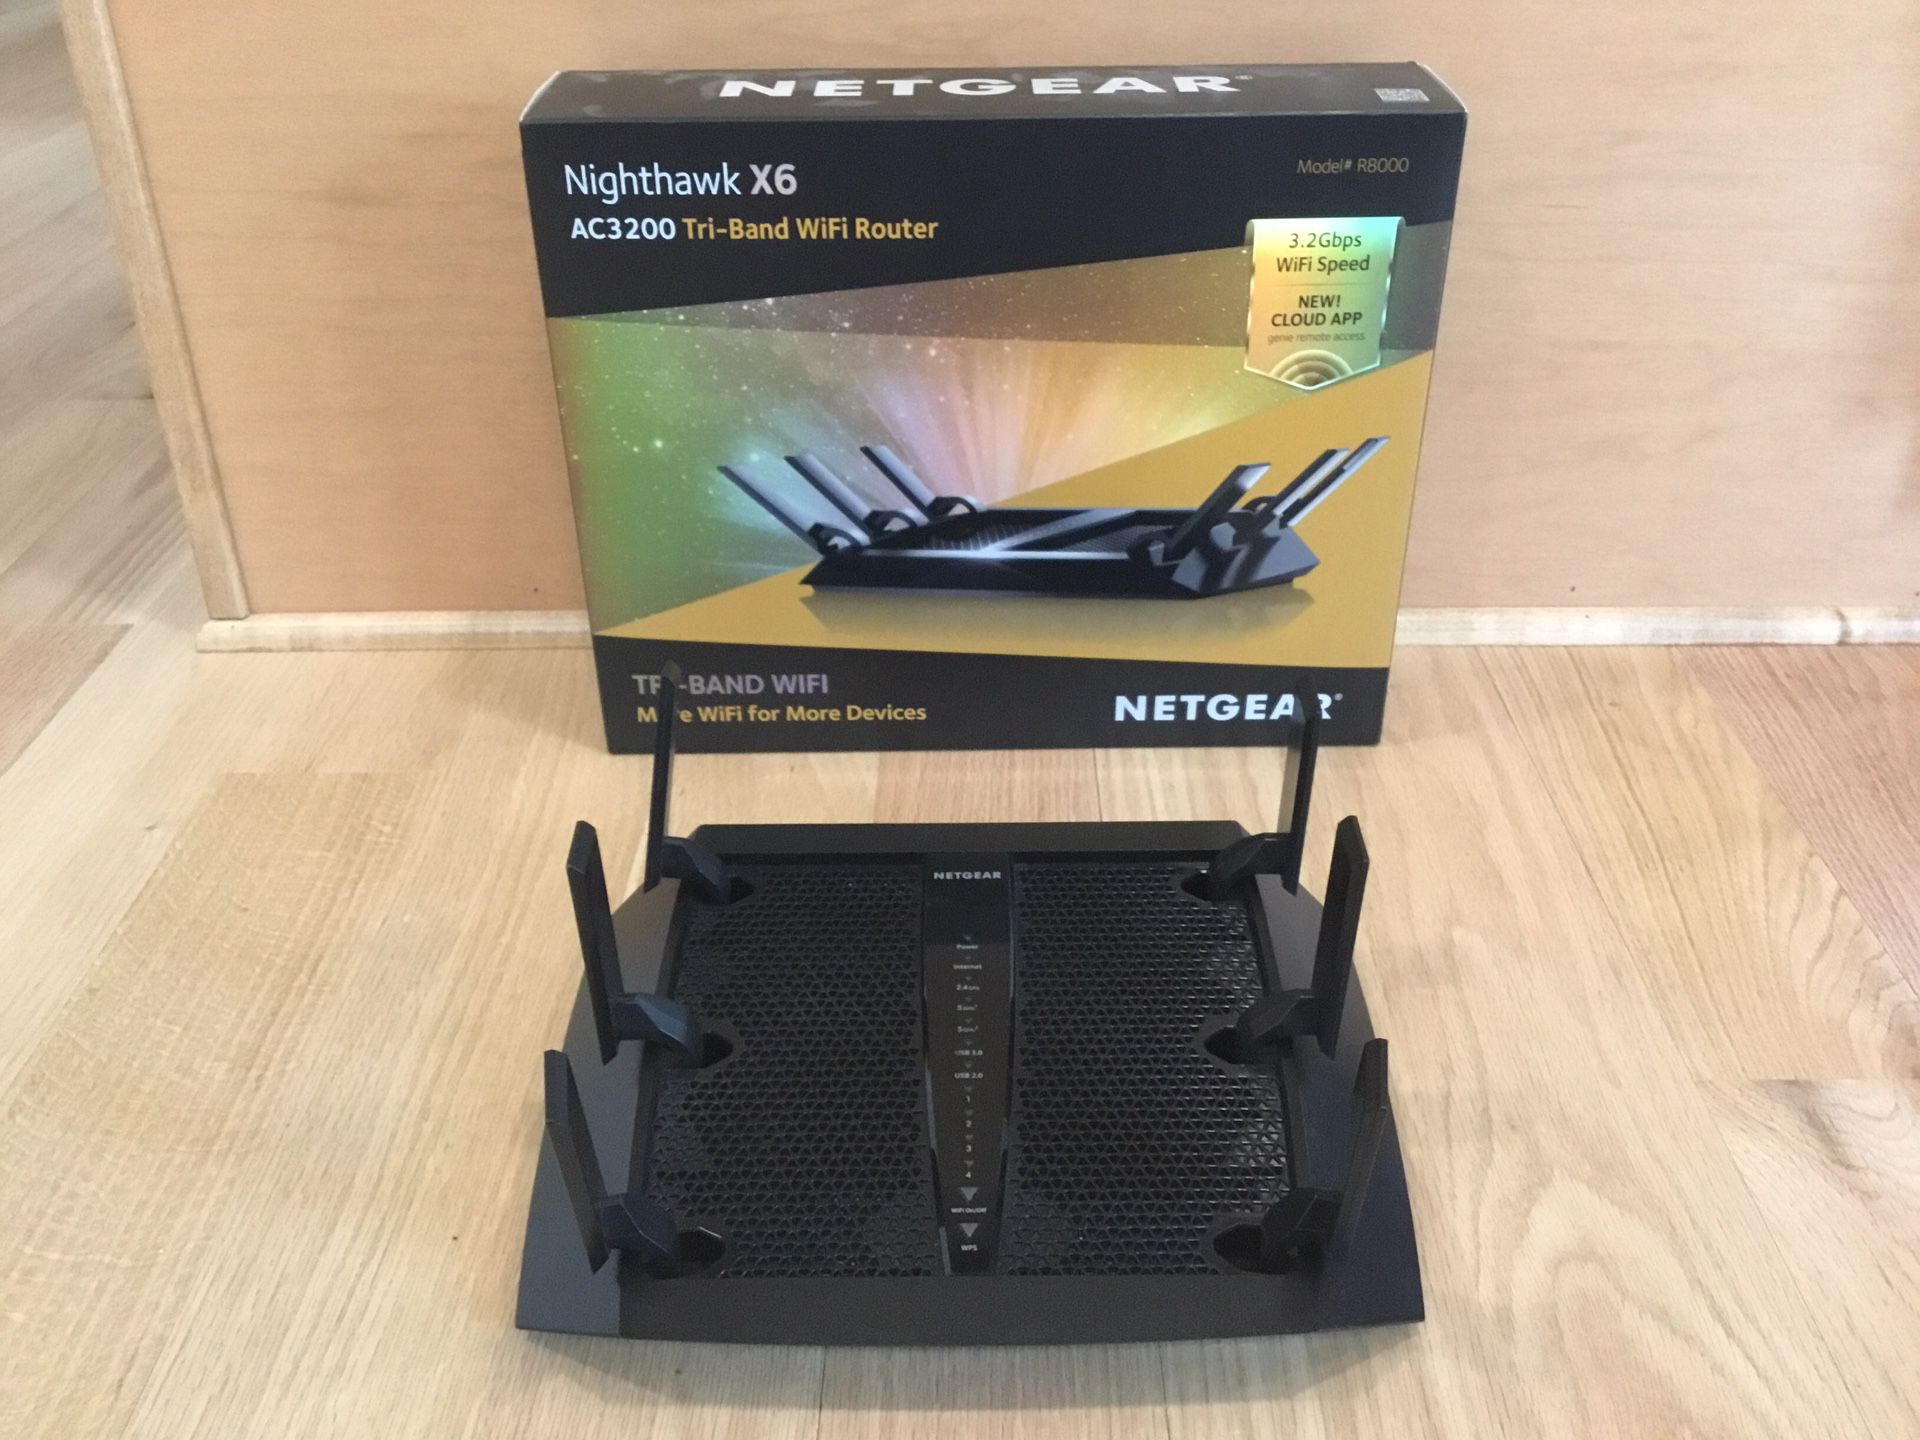 Nighthawk X6 AC3200 Tri- Band Wi-Fi Router Model #R8000